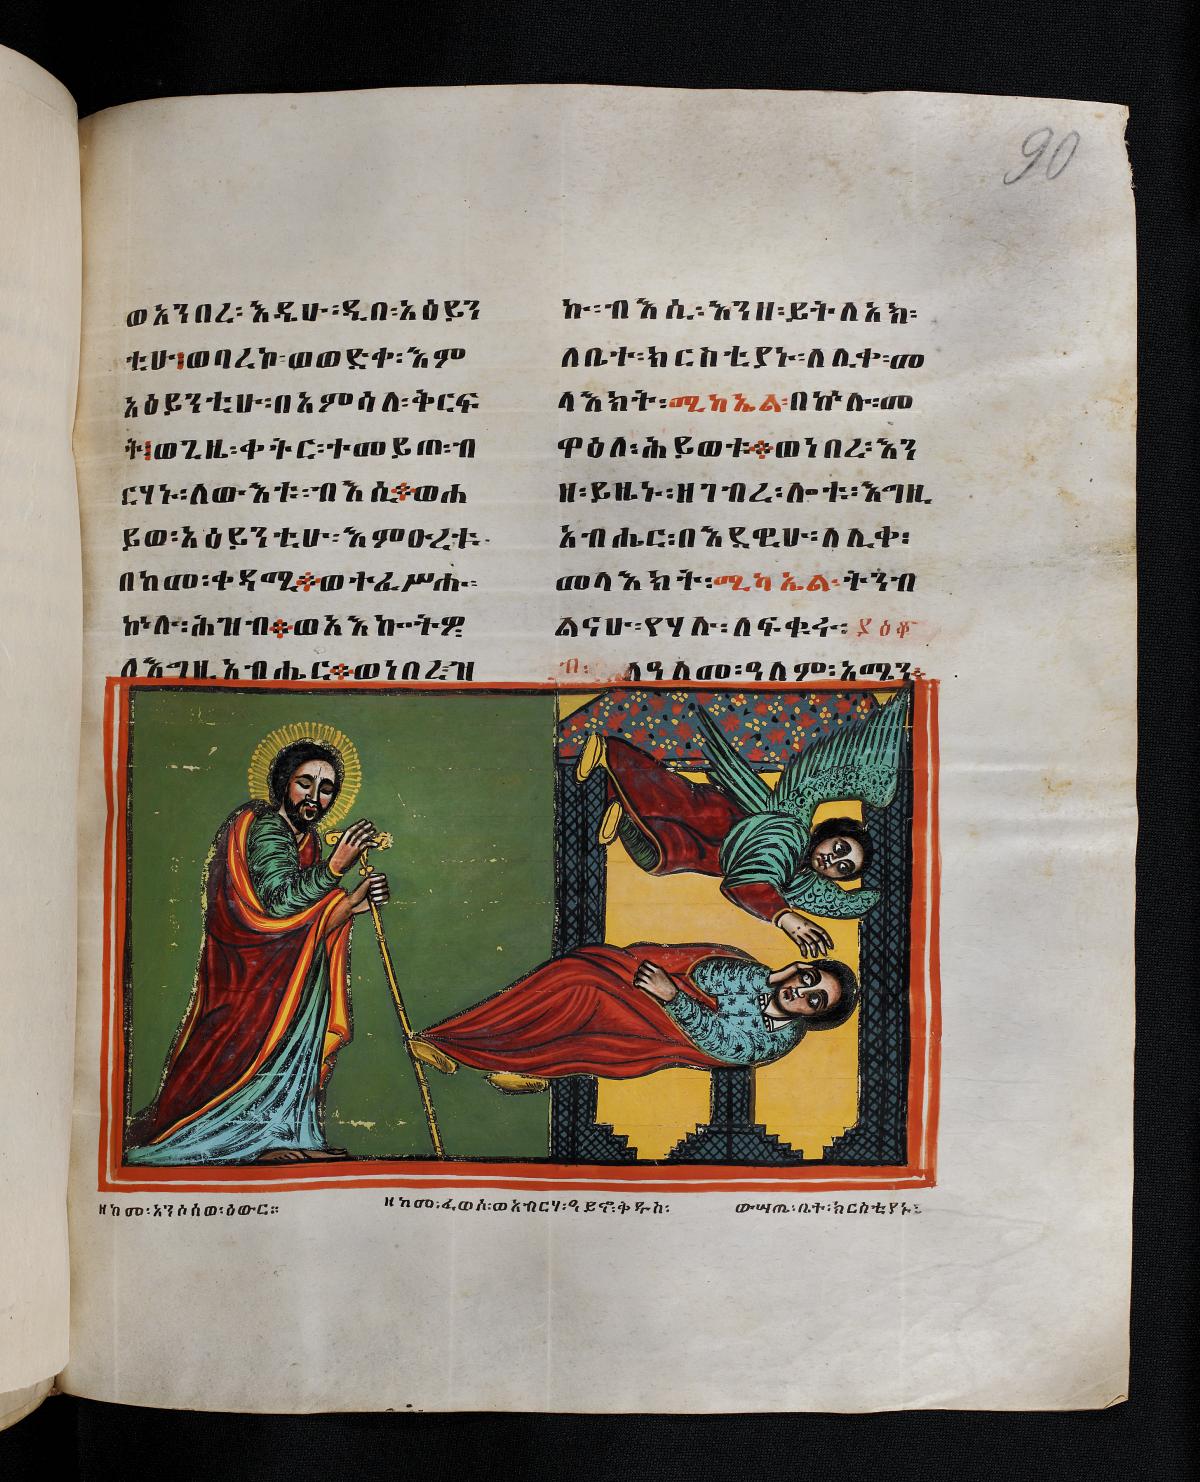 Ein Blinder vom hl. Michael sehend gemacht, äthiopische Handschrift, Ms or fol 394, 90r, äthiopische Handschrift